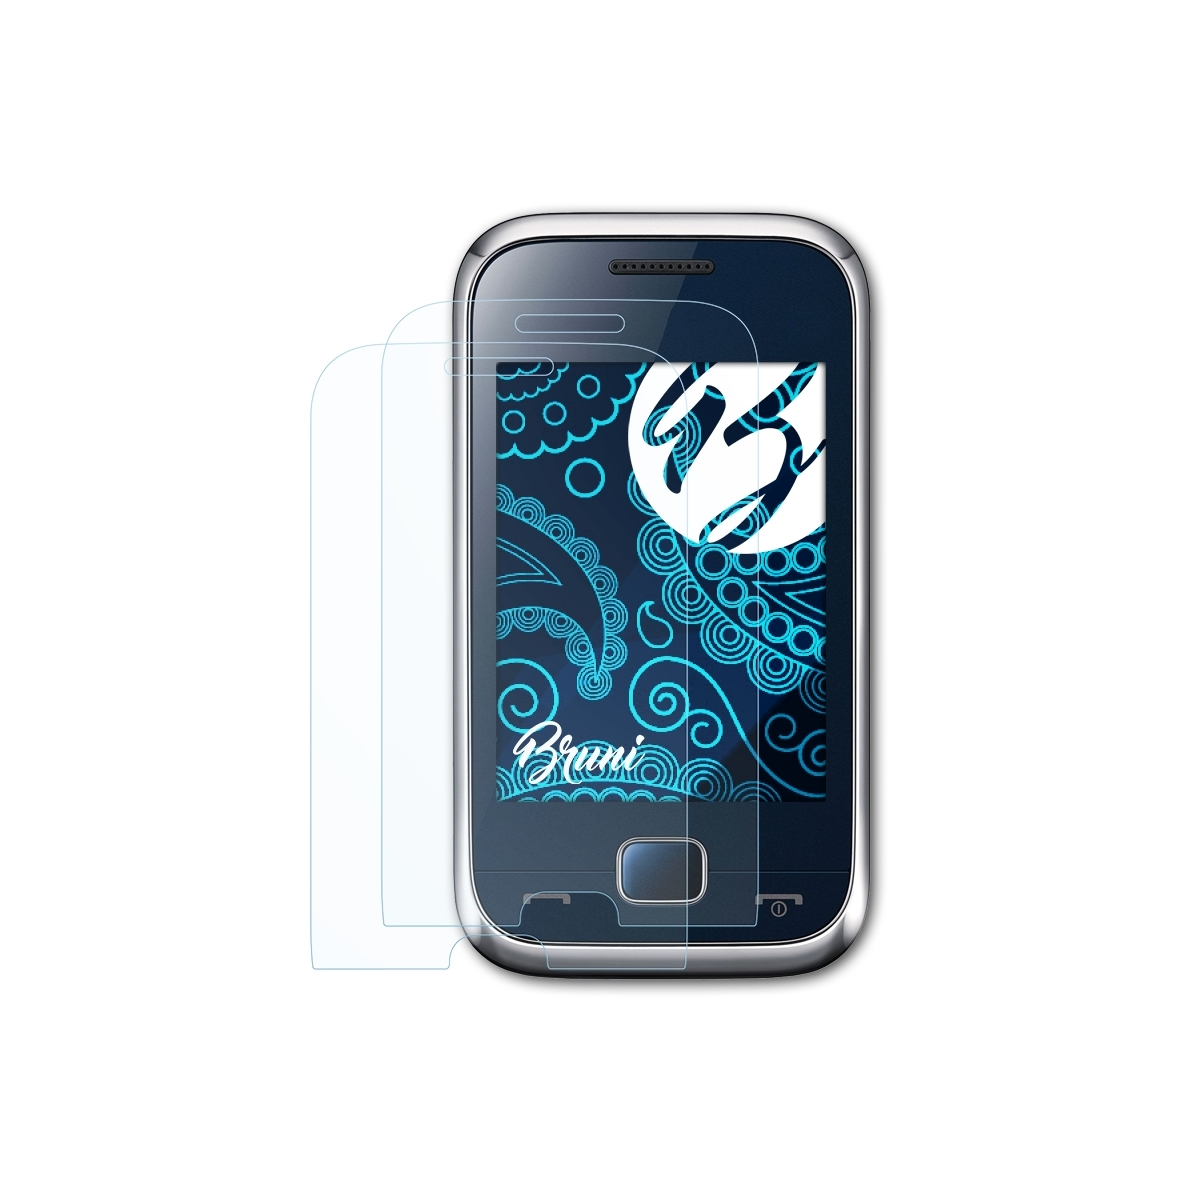 Samsung 60 (GT-C3312R)) Schutzfolie(für BRUNI 2x Basics-Clear Rex